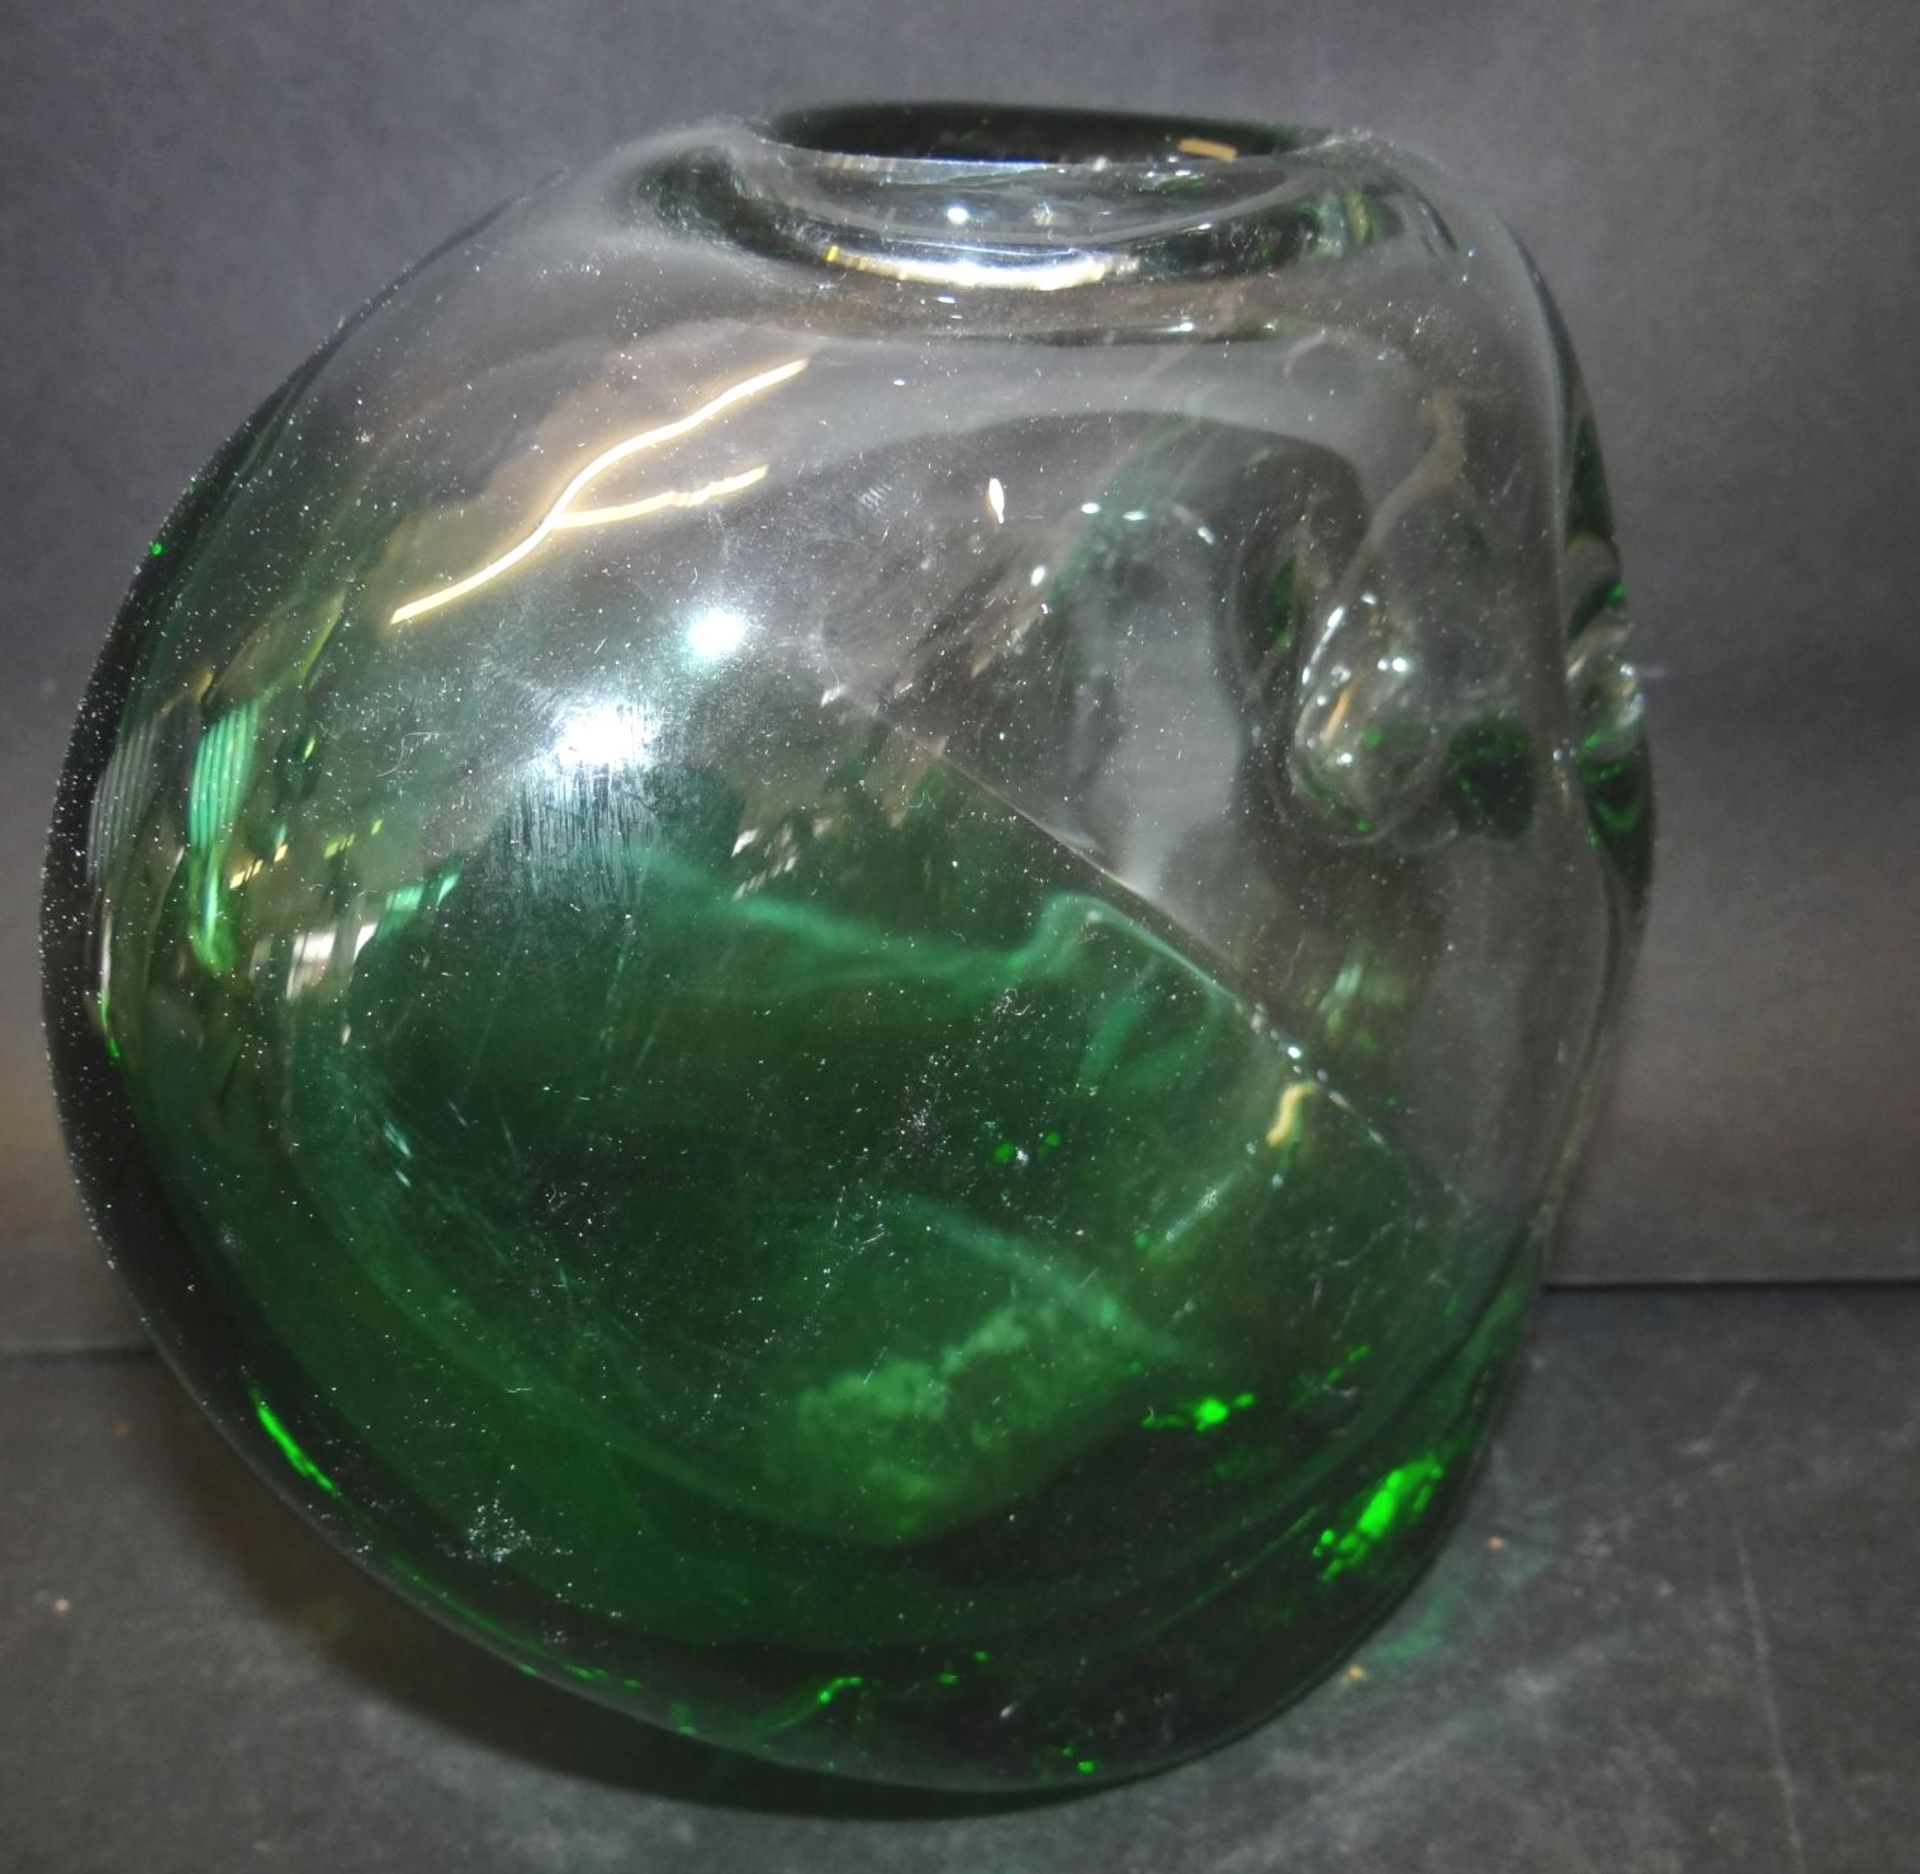 grosse, schwere Kunstglas-Vase, grün/weiss, 17x17 c - Image 3 of 4